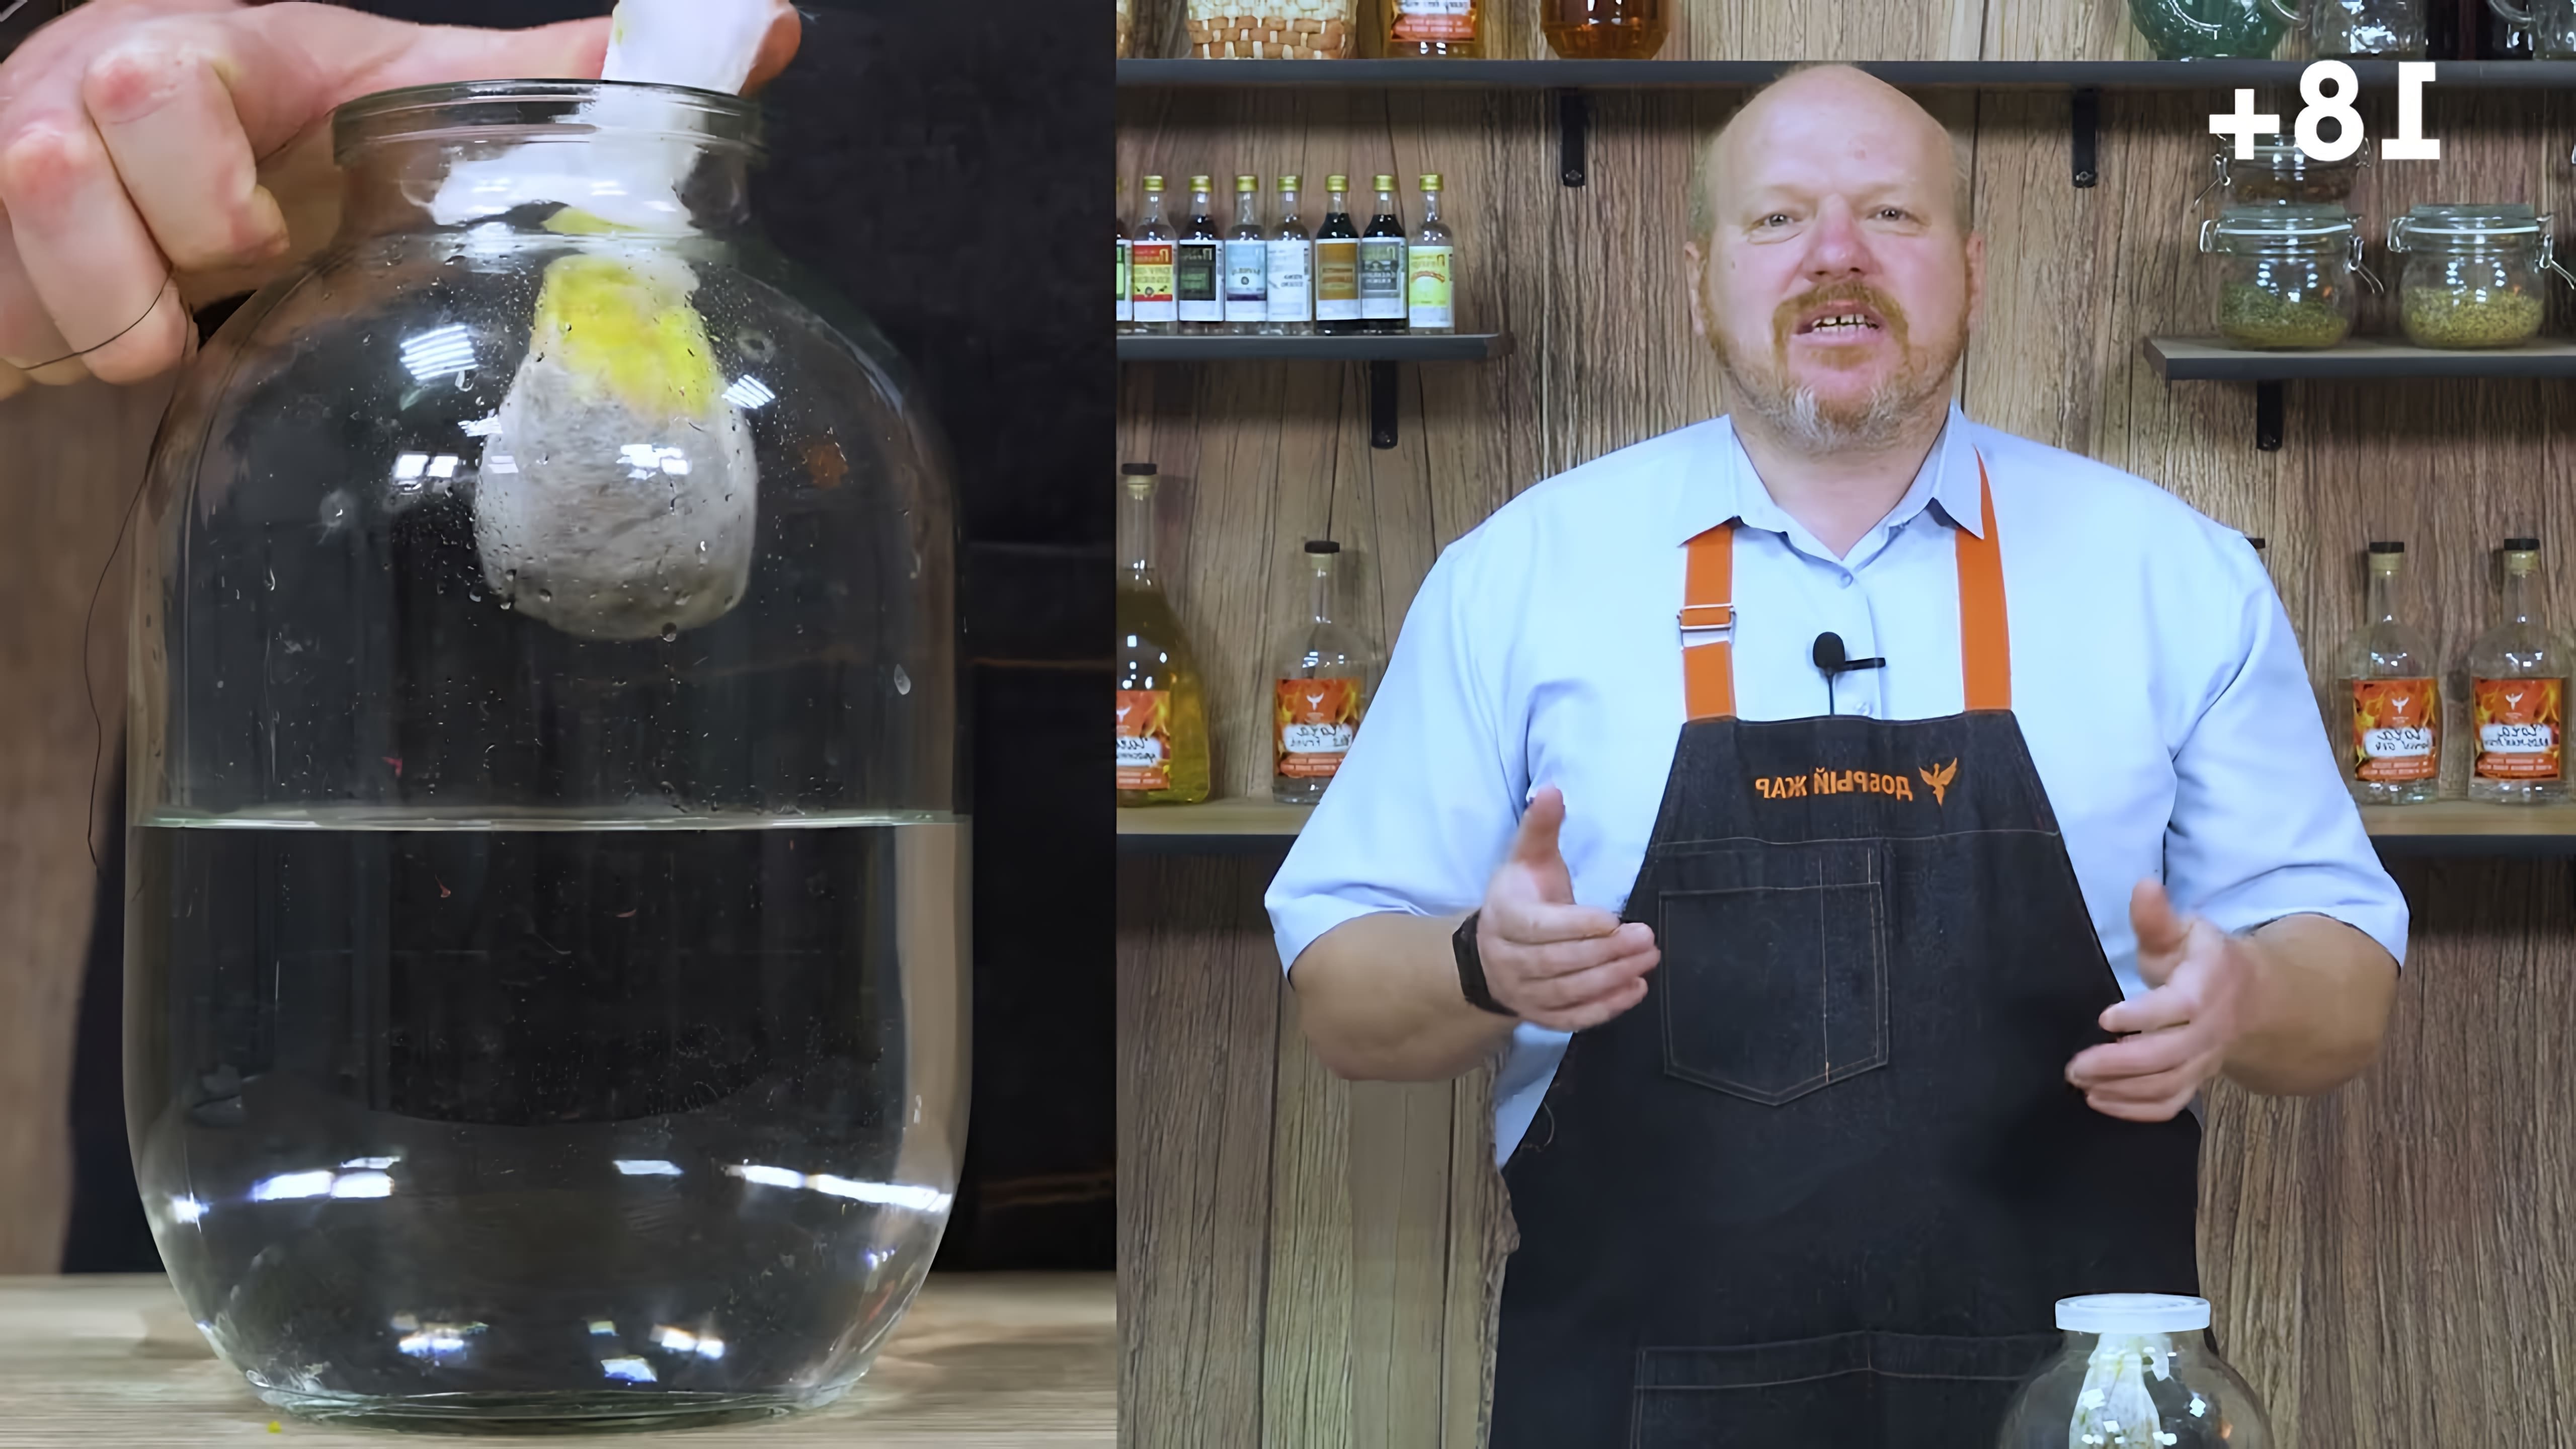 В данном видео Дмитрий Лафетников, ведущий информационного канала производственной компании "Добрый жар", делится рецептом имитации джина, приготовленного способом висельника